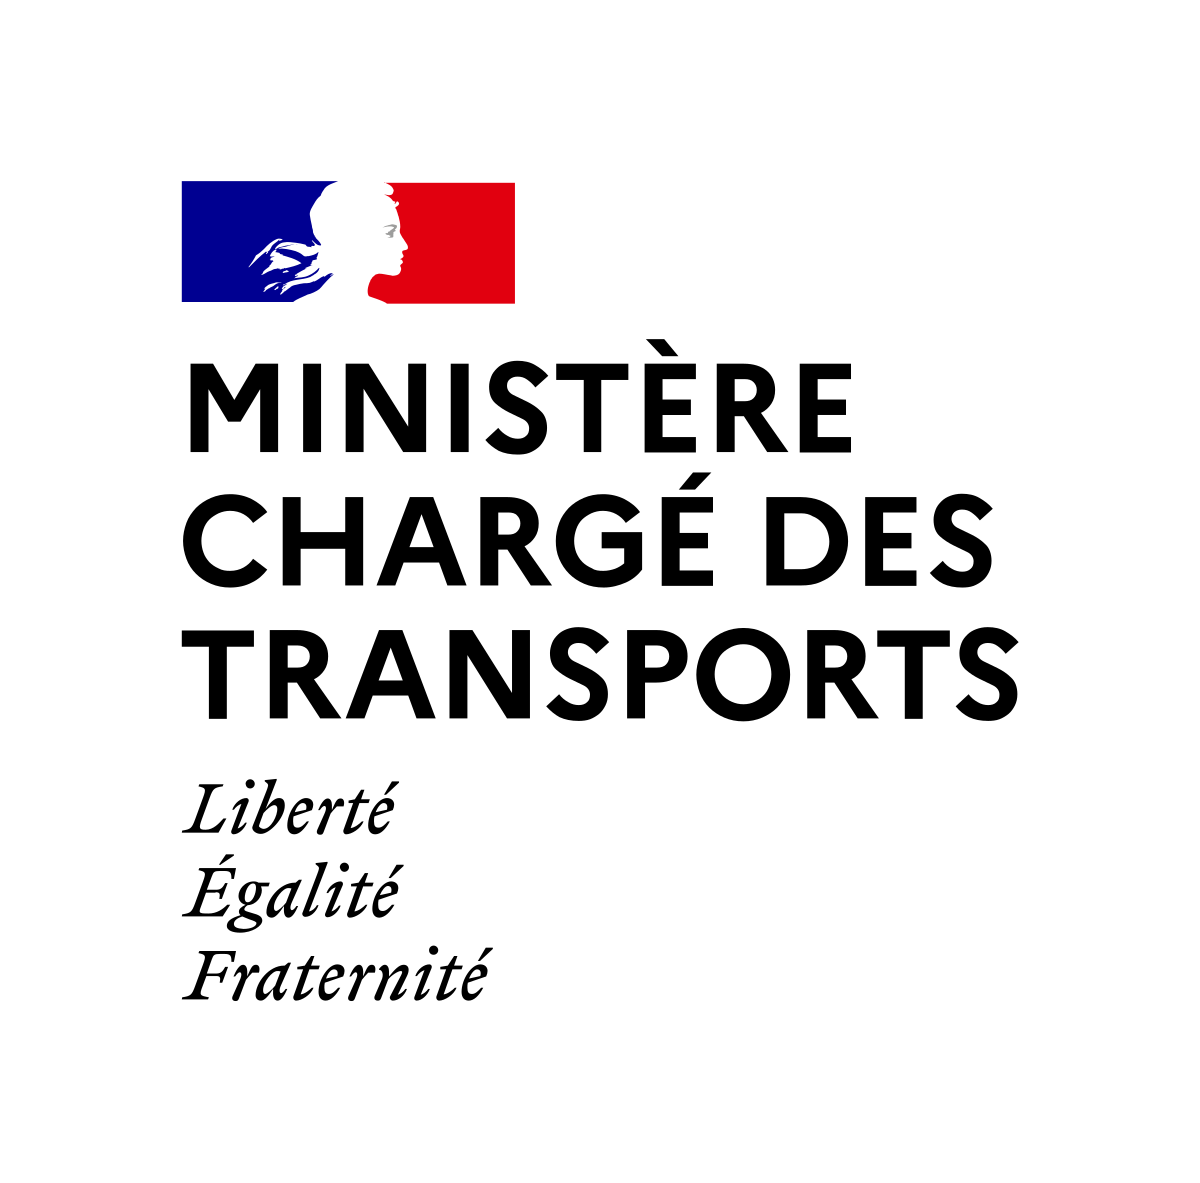 Ministre charg des Transportssvg